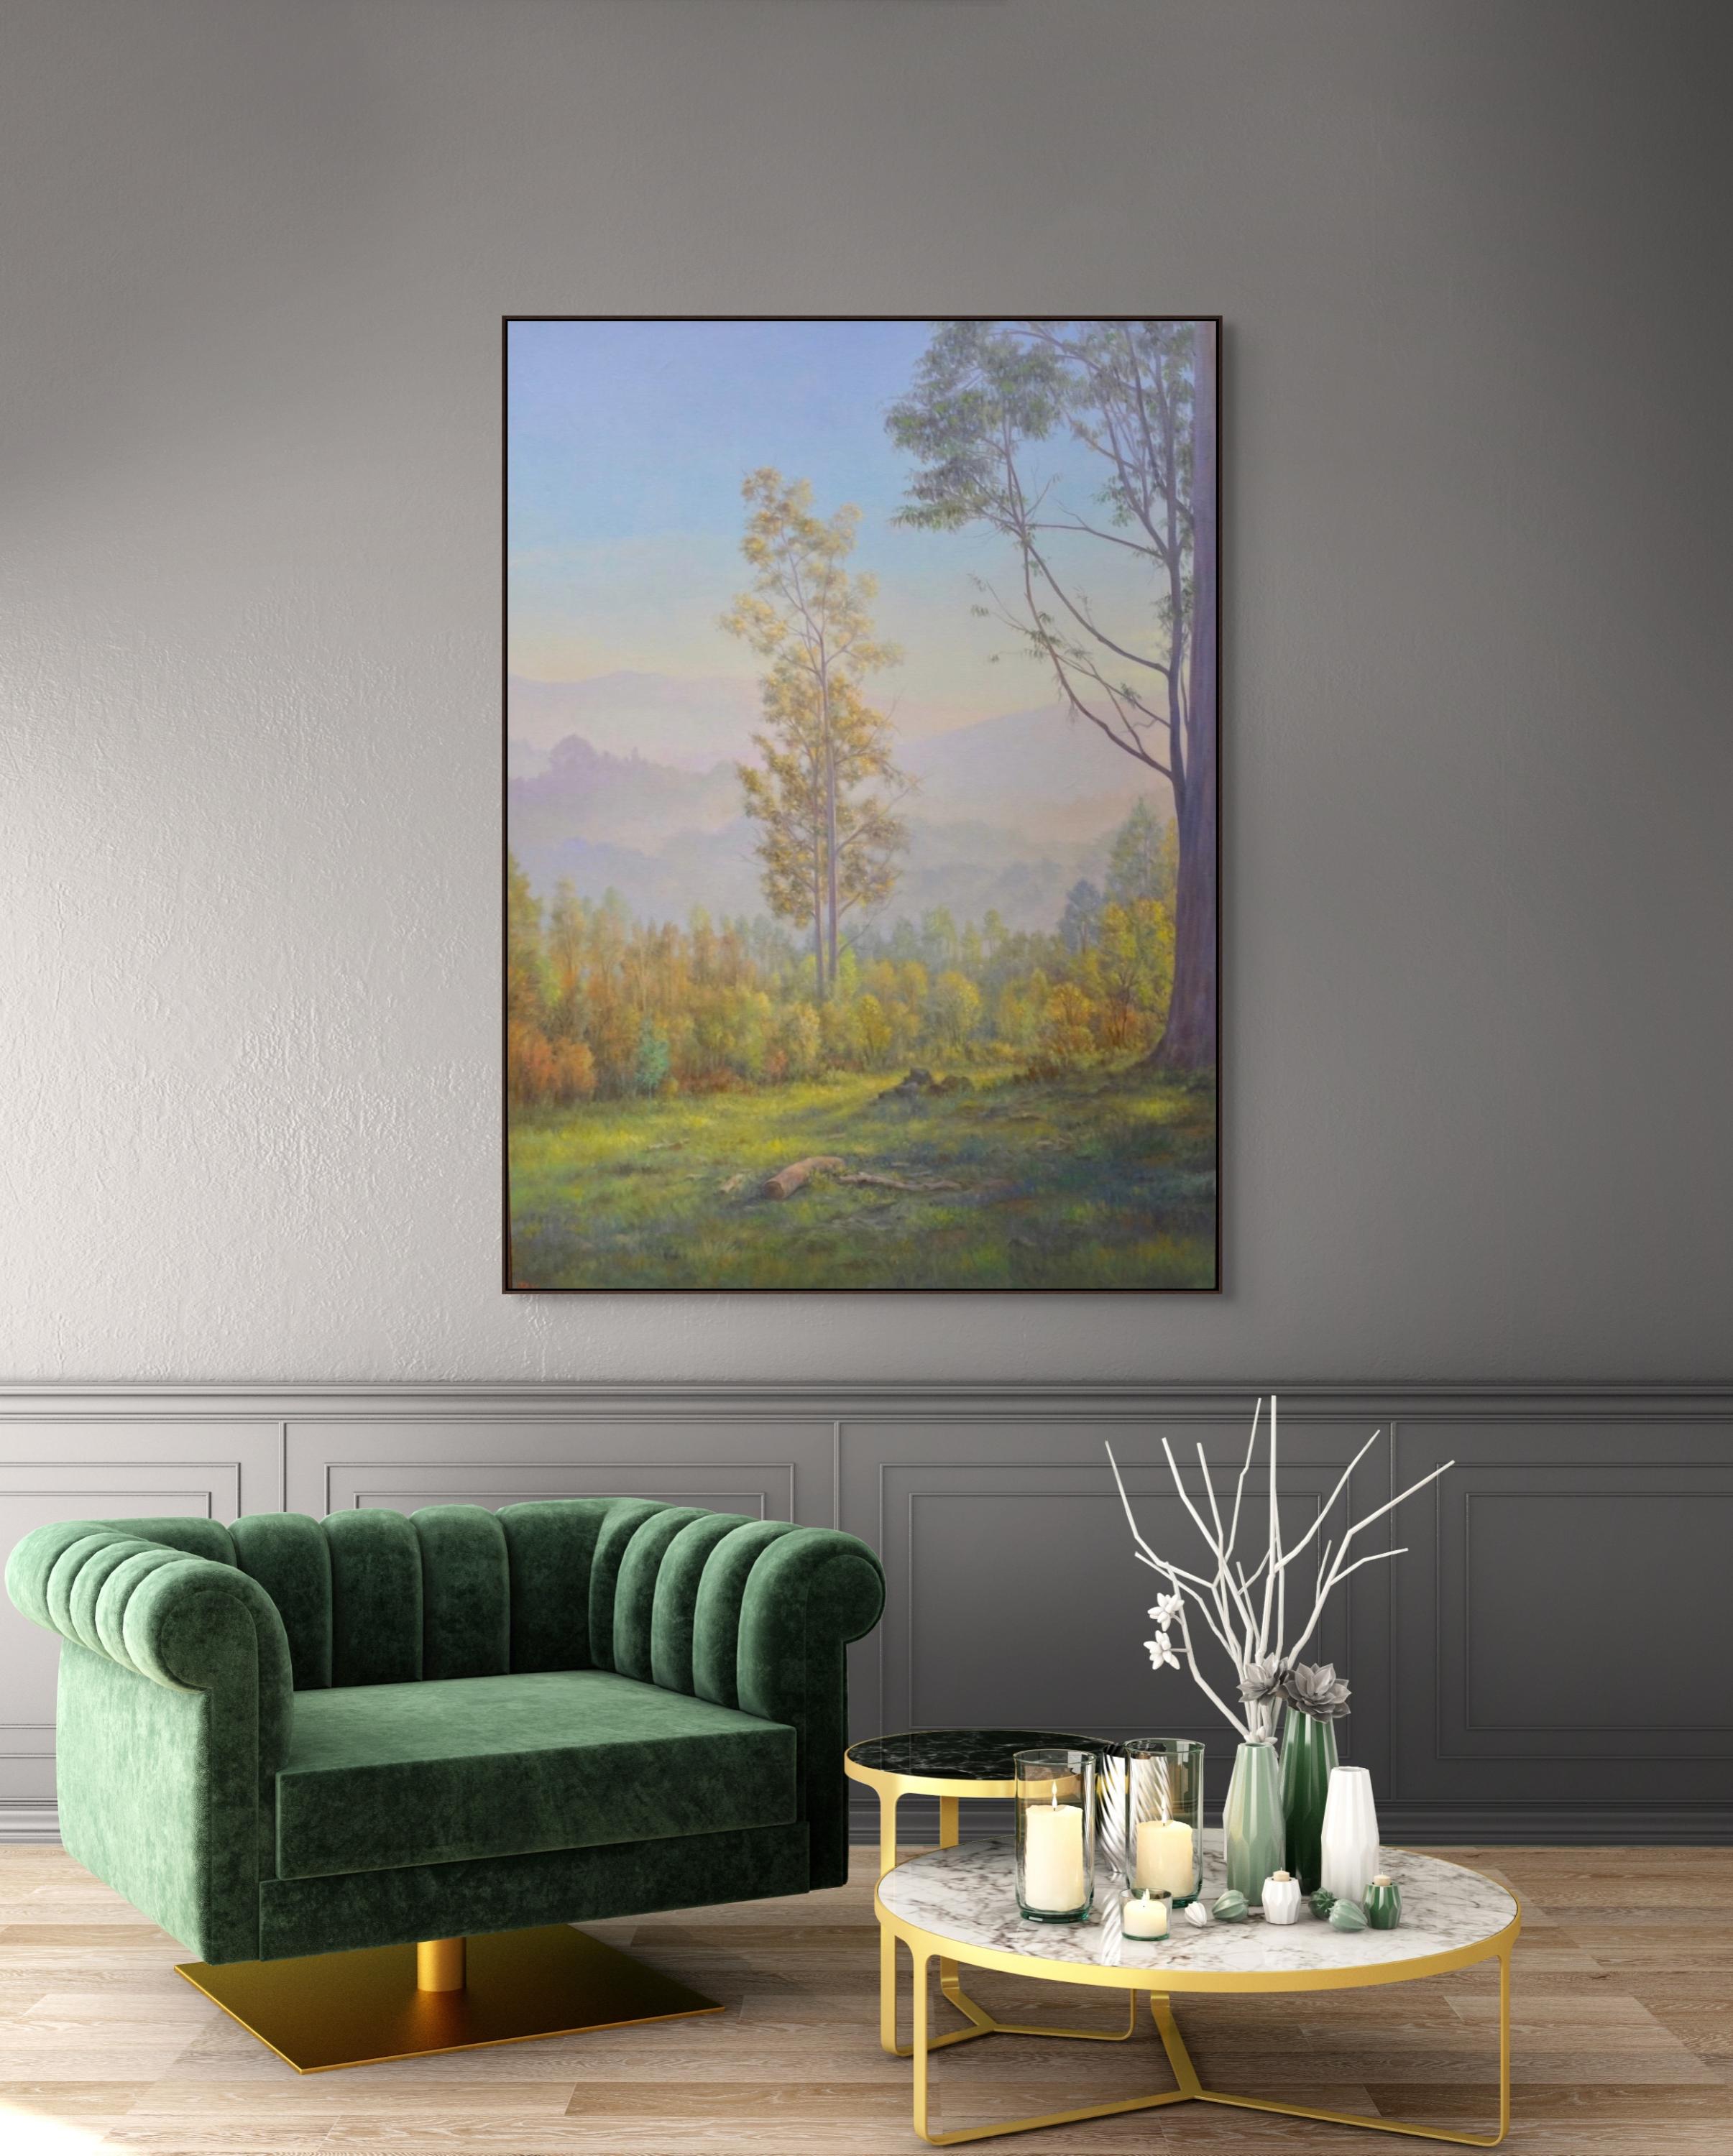 Un eucalyptus solitaire se dresse dans cette peinture de paysage atmosphérique verticale qui comprend de l'herbe verte éclairée par le soleil, des collines violettes ondulantes et un ciel brumeux. Une superbe œuvre d'art originale de Willard Dixon,